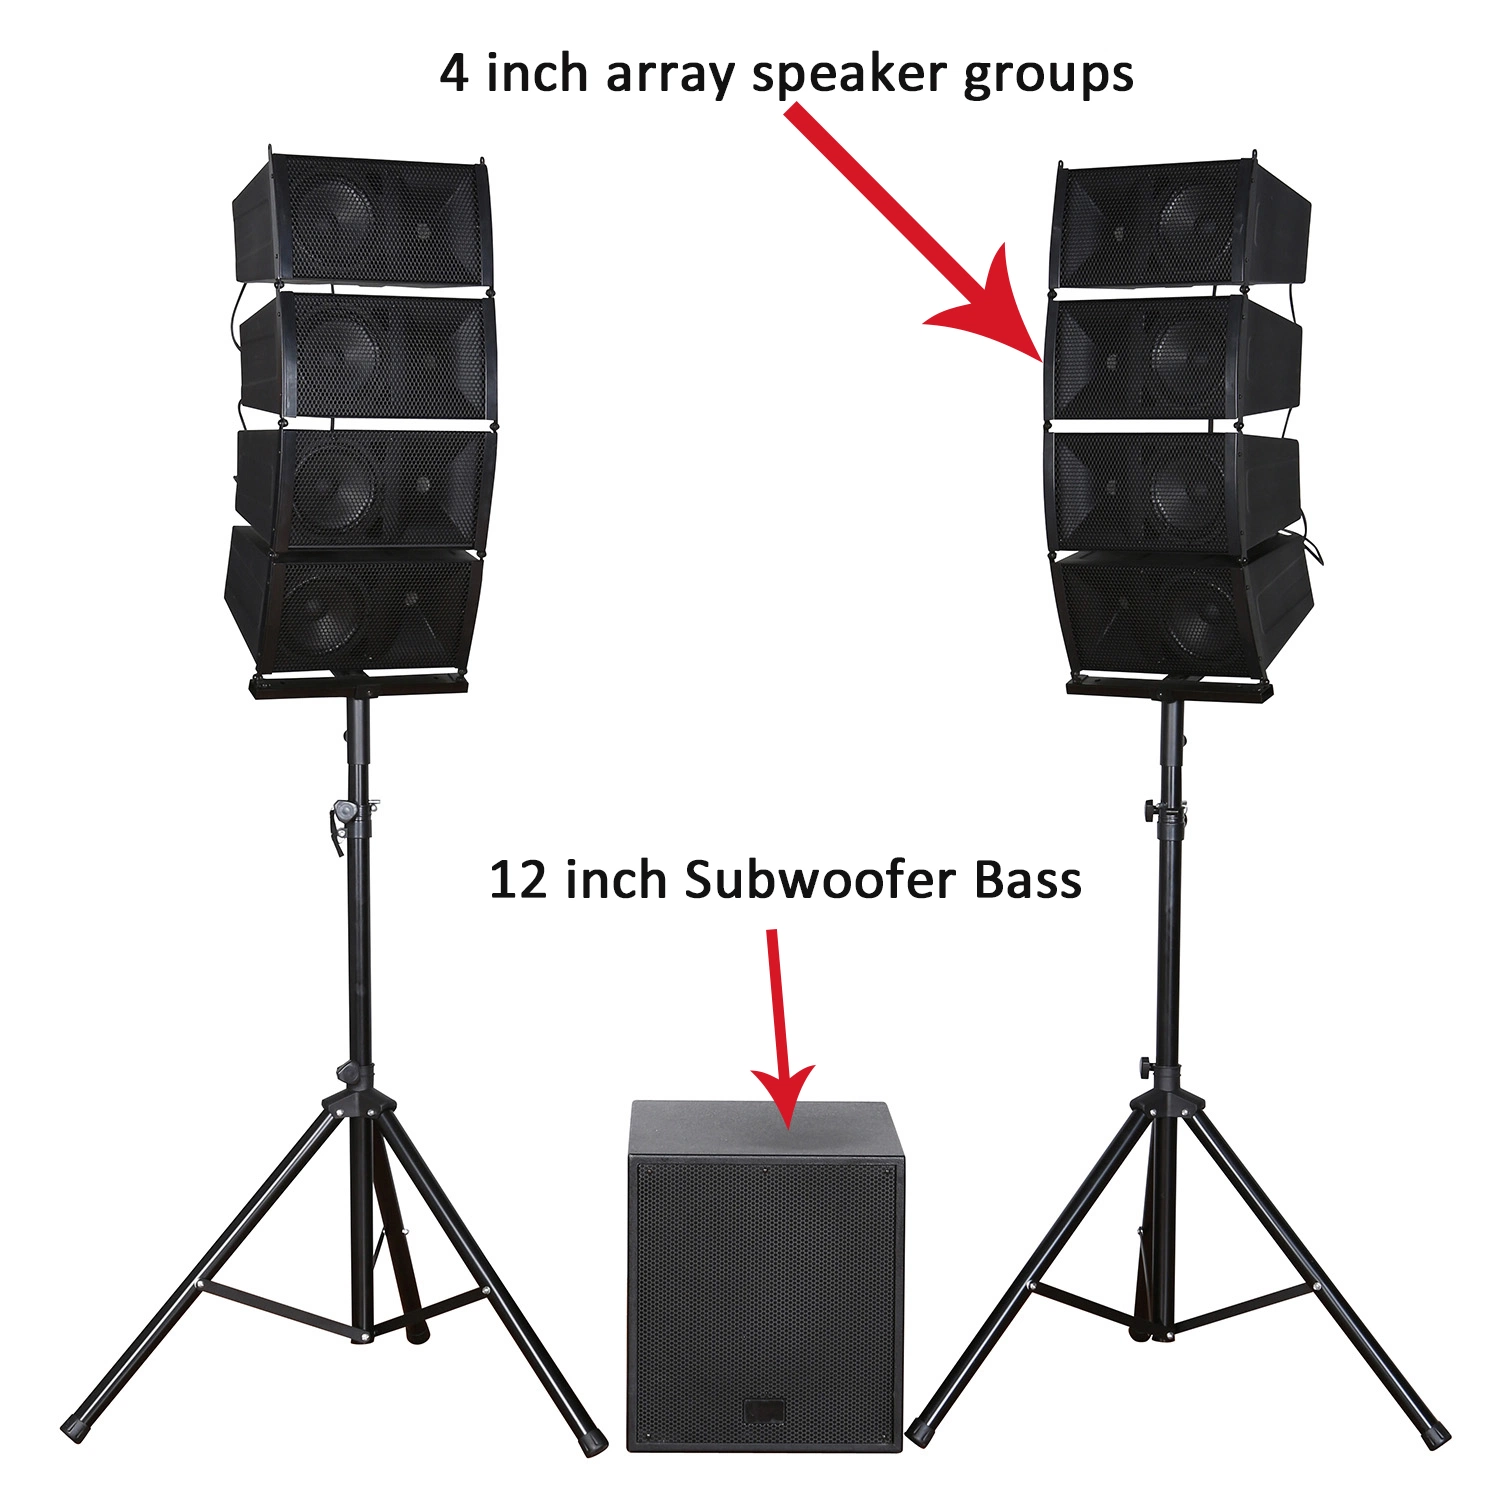 Le subwoofer 12" Bass pro audio hi-fi haut-parleur professionnel Bluetooth